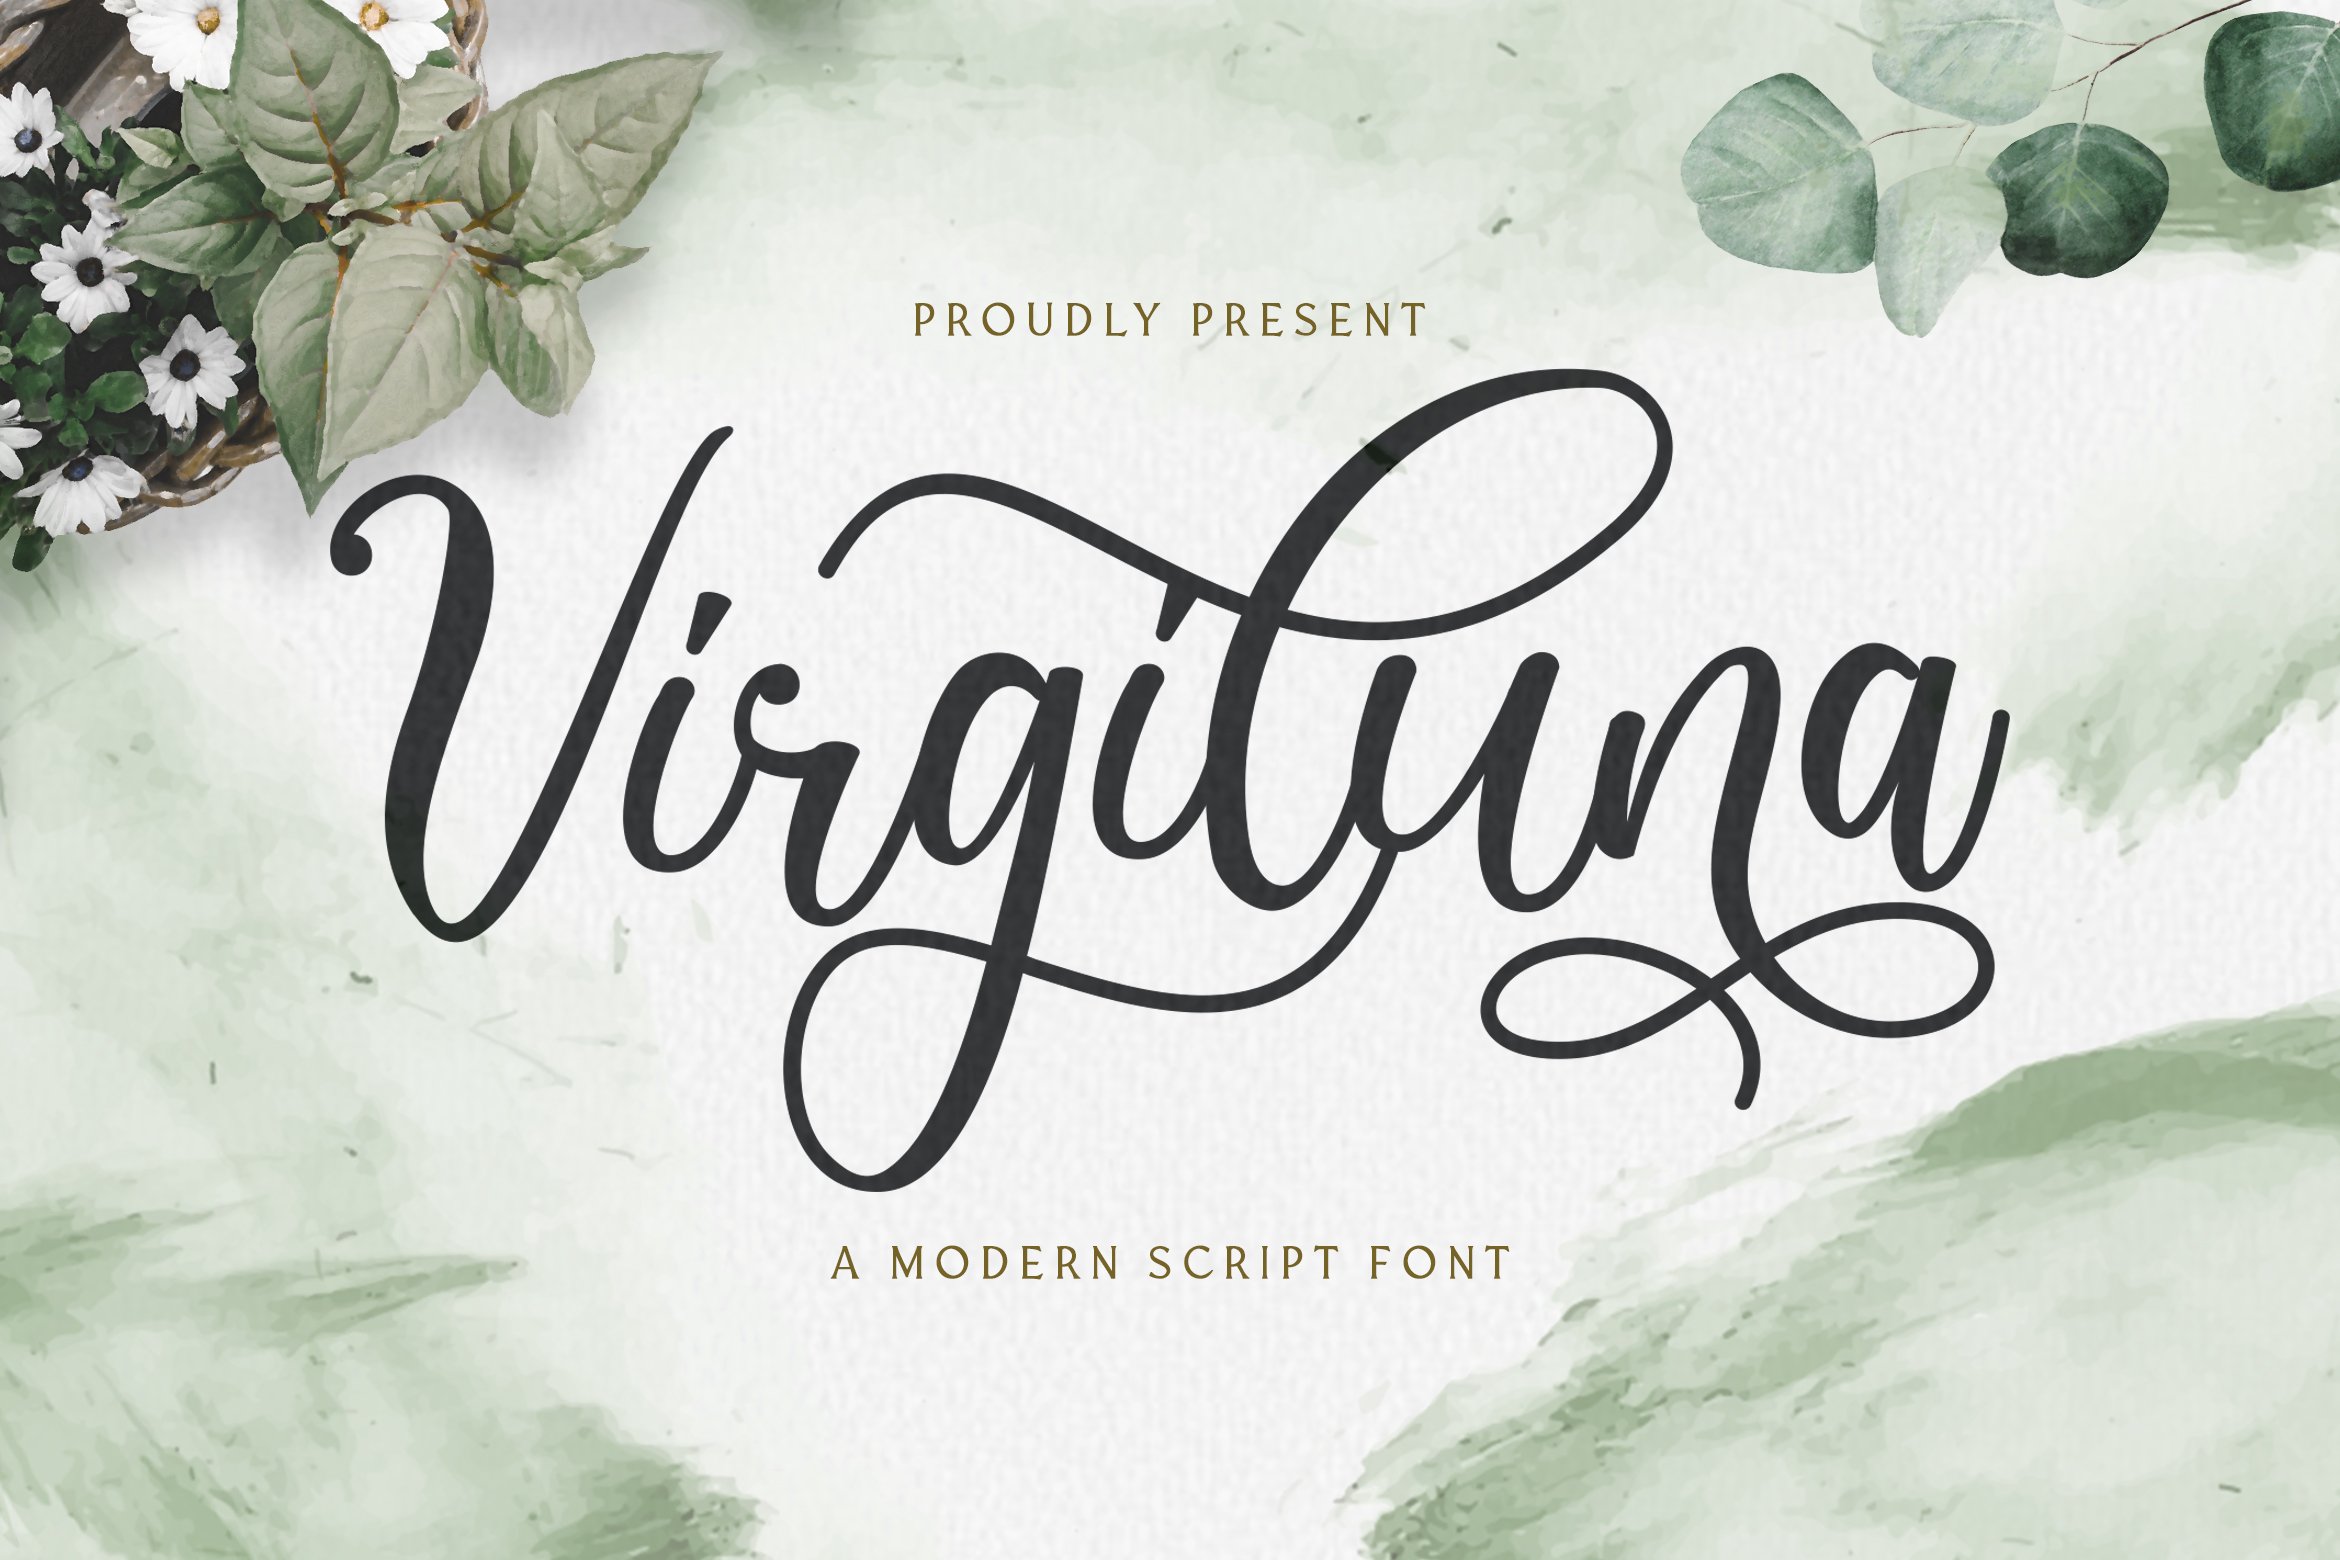 Virgiluna - Modern Calligraphy Font cover image.